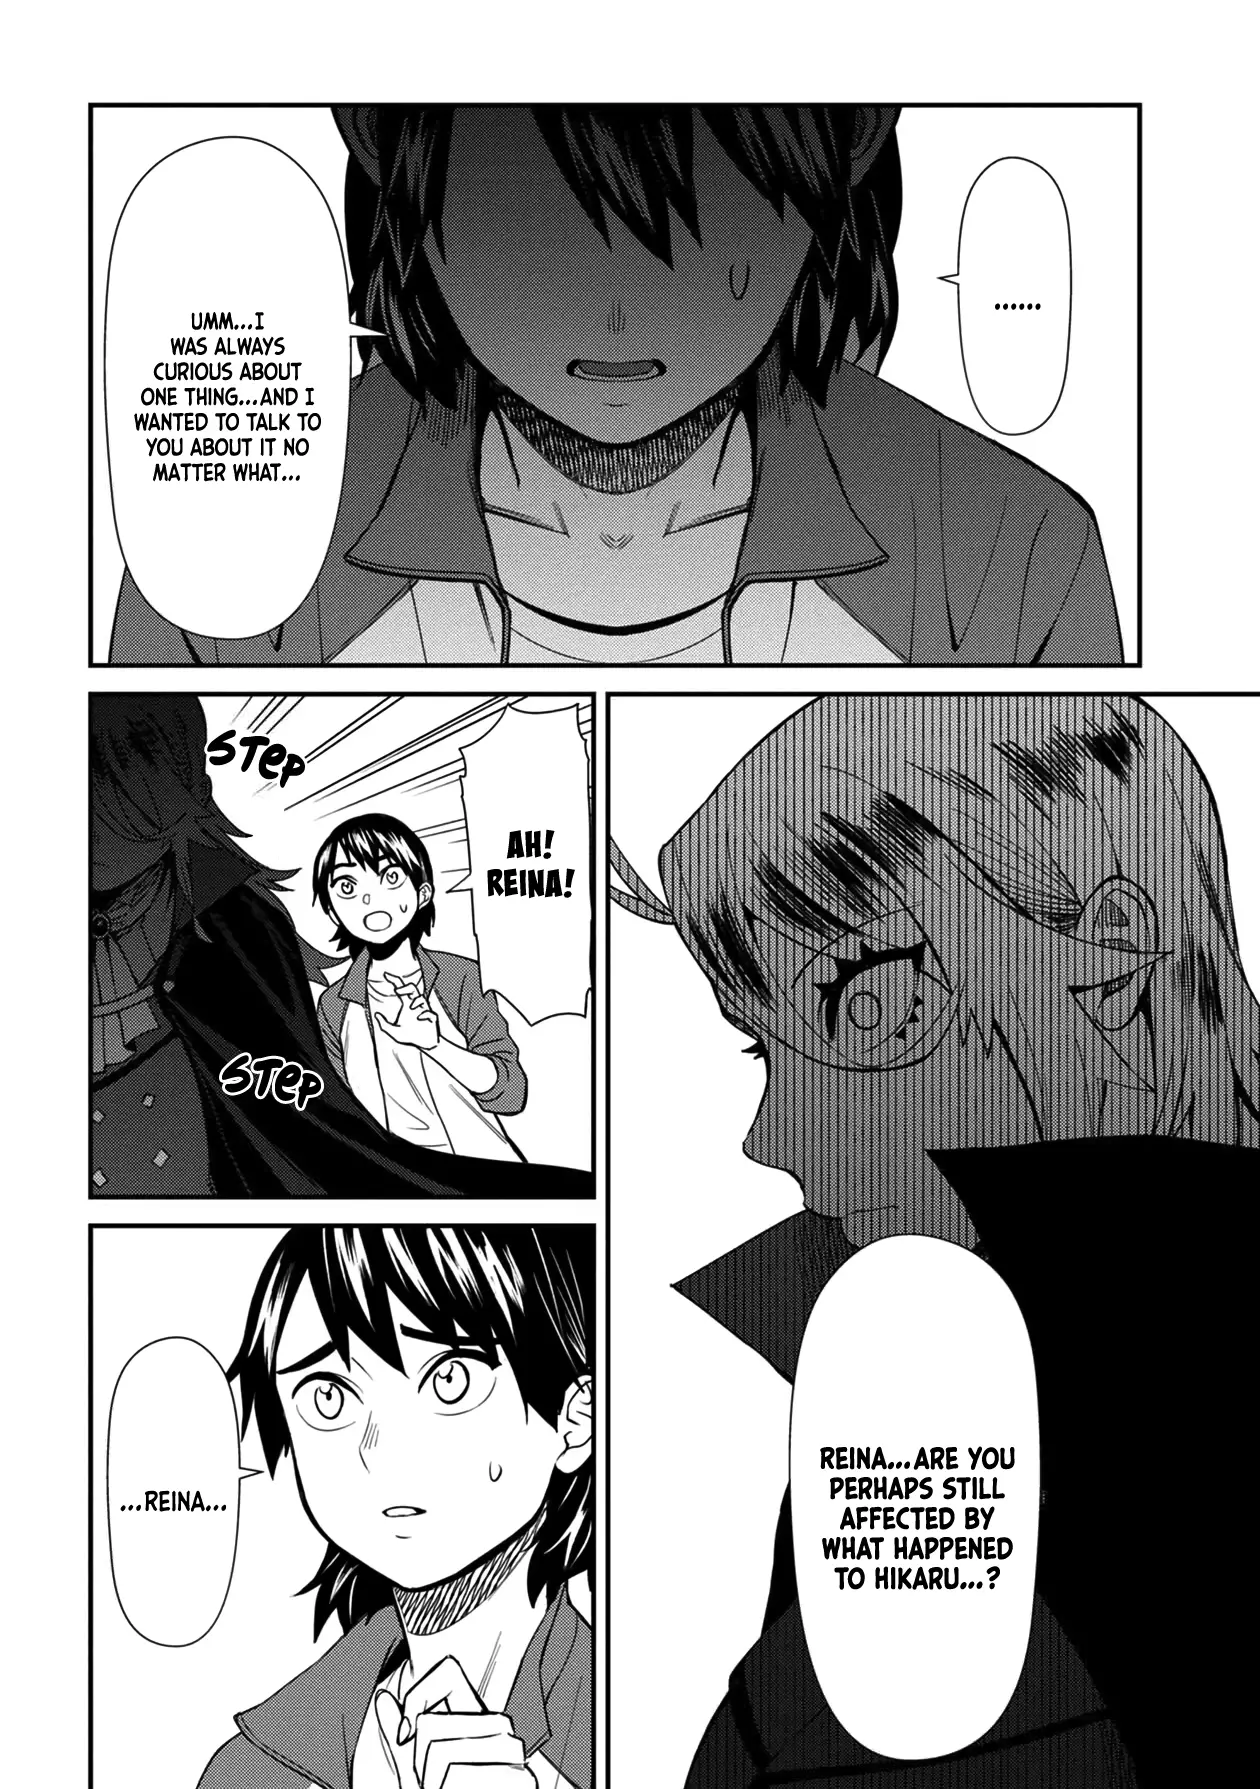 Bad Girl-Exorcist Reina - 37 page 16-1722e5ed